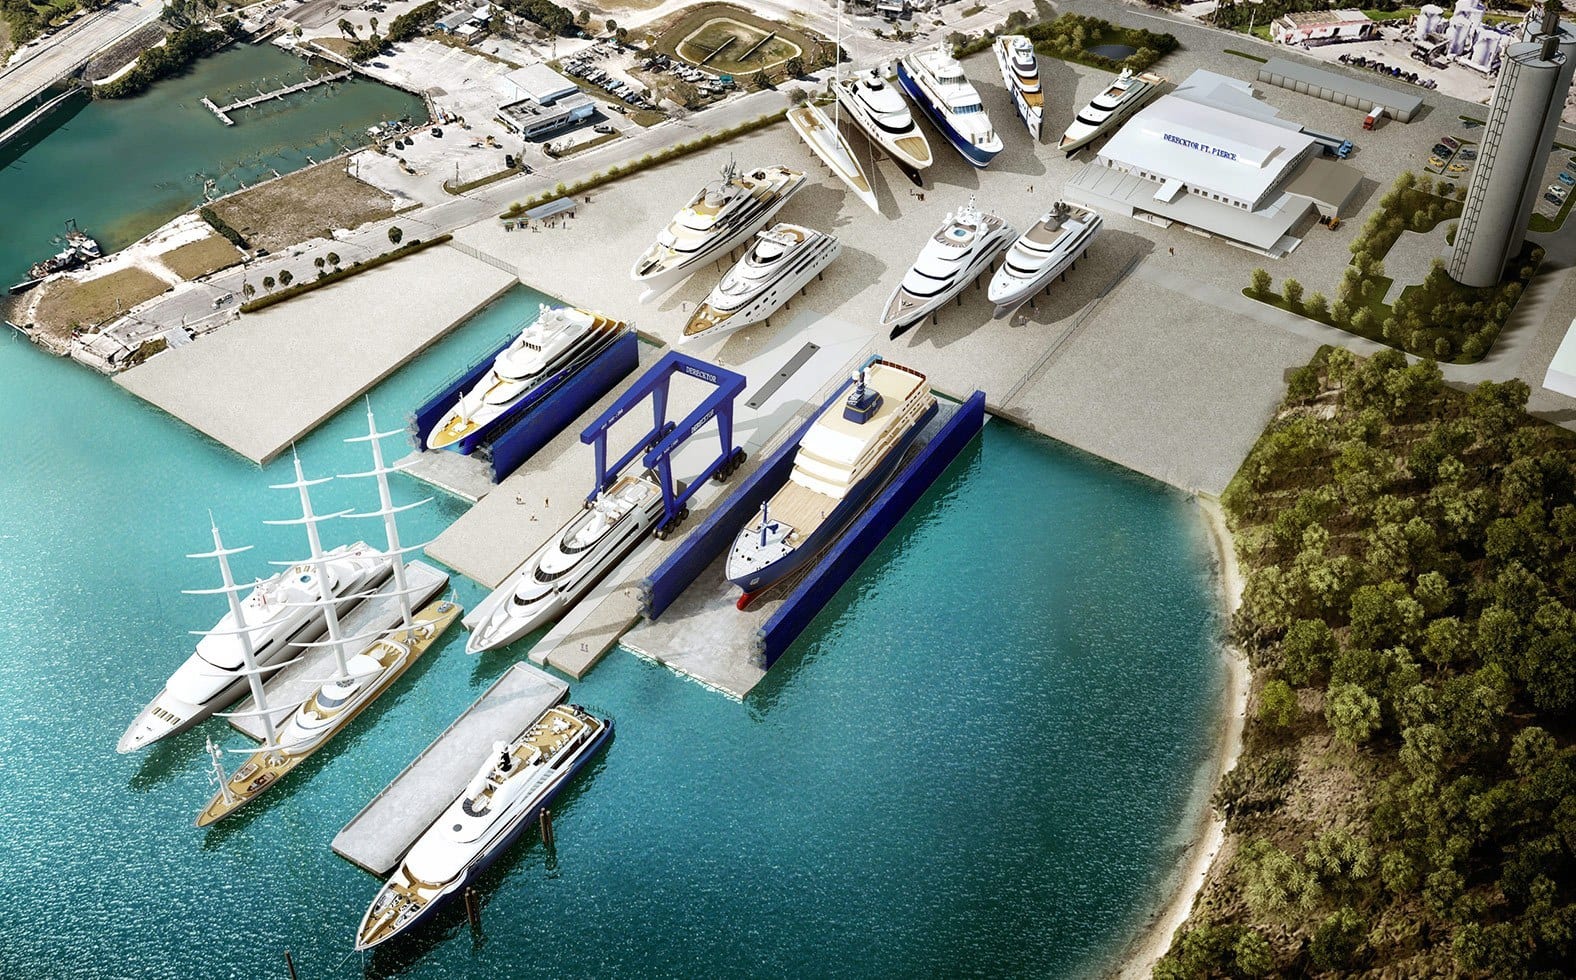 Derecktor’s Plans for Megayacht Shipyard in Florida Approved